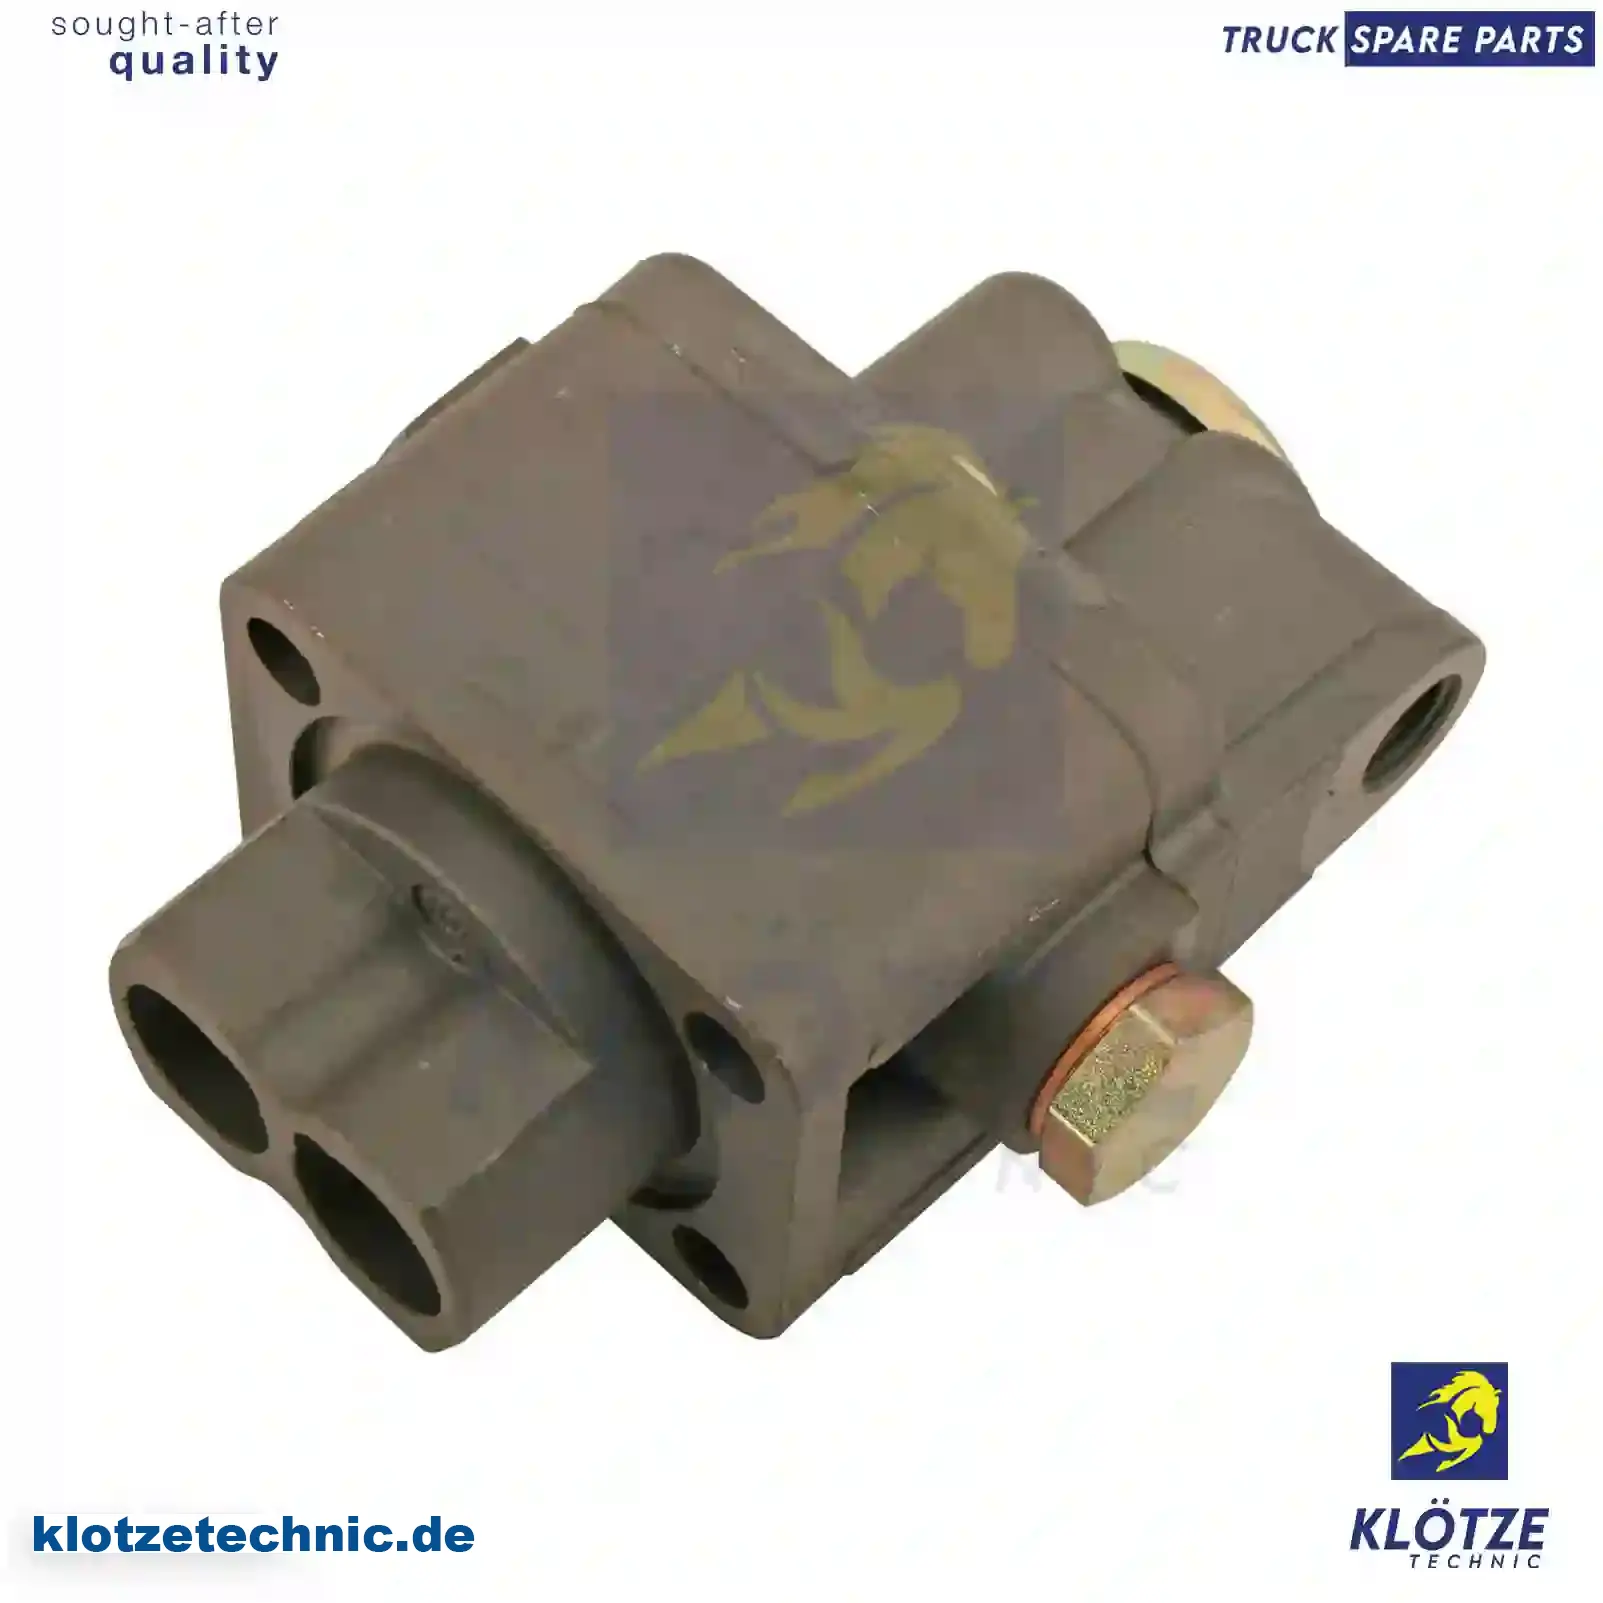 Shifting valve, 1609886, 5001860395, ZG02448-0008 || Klötze Technic